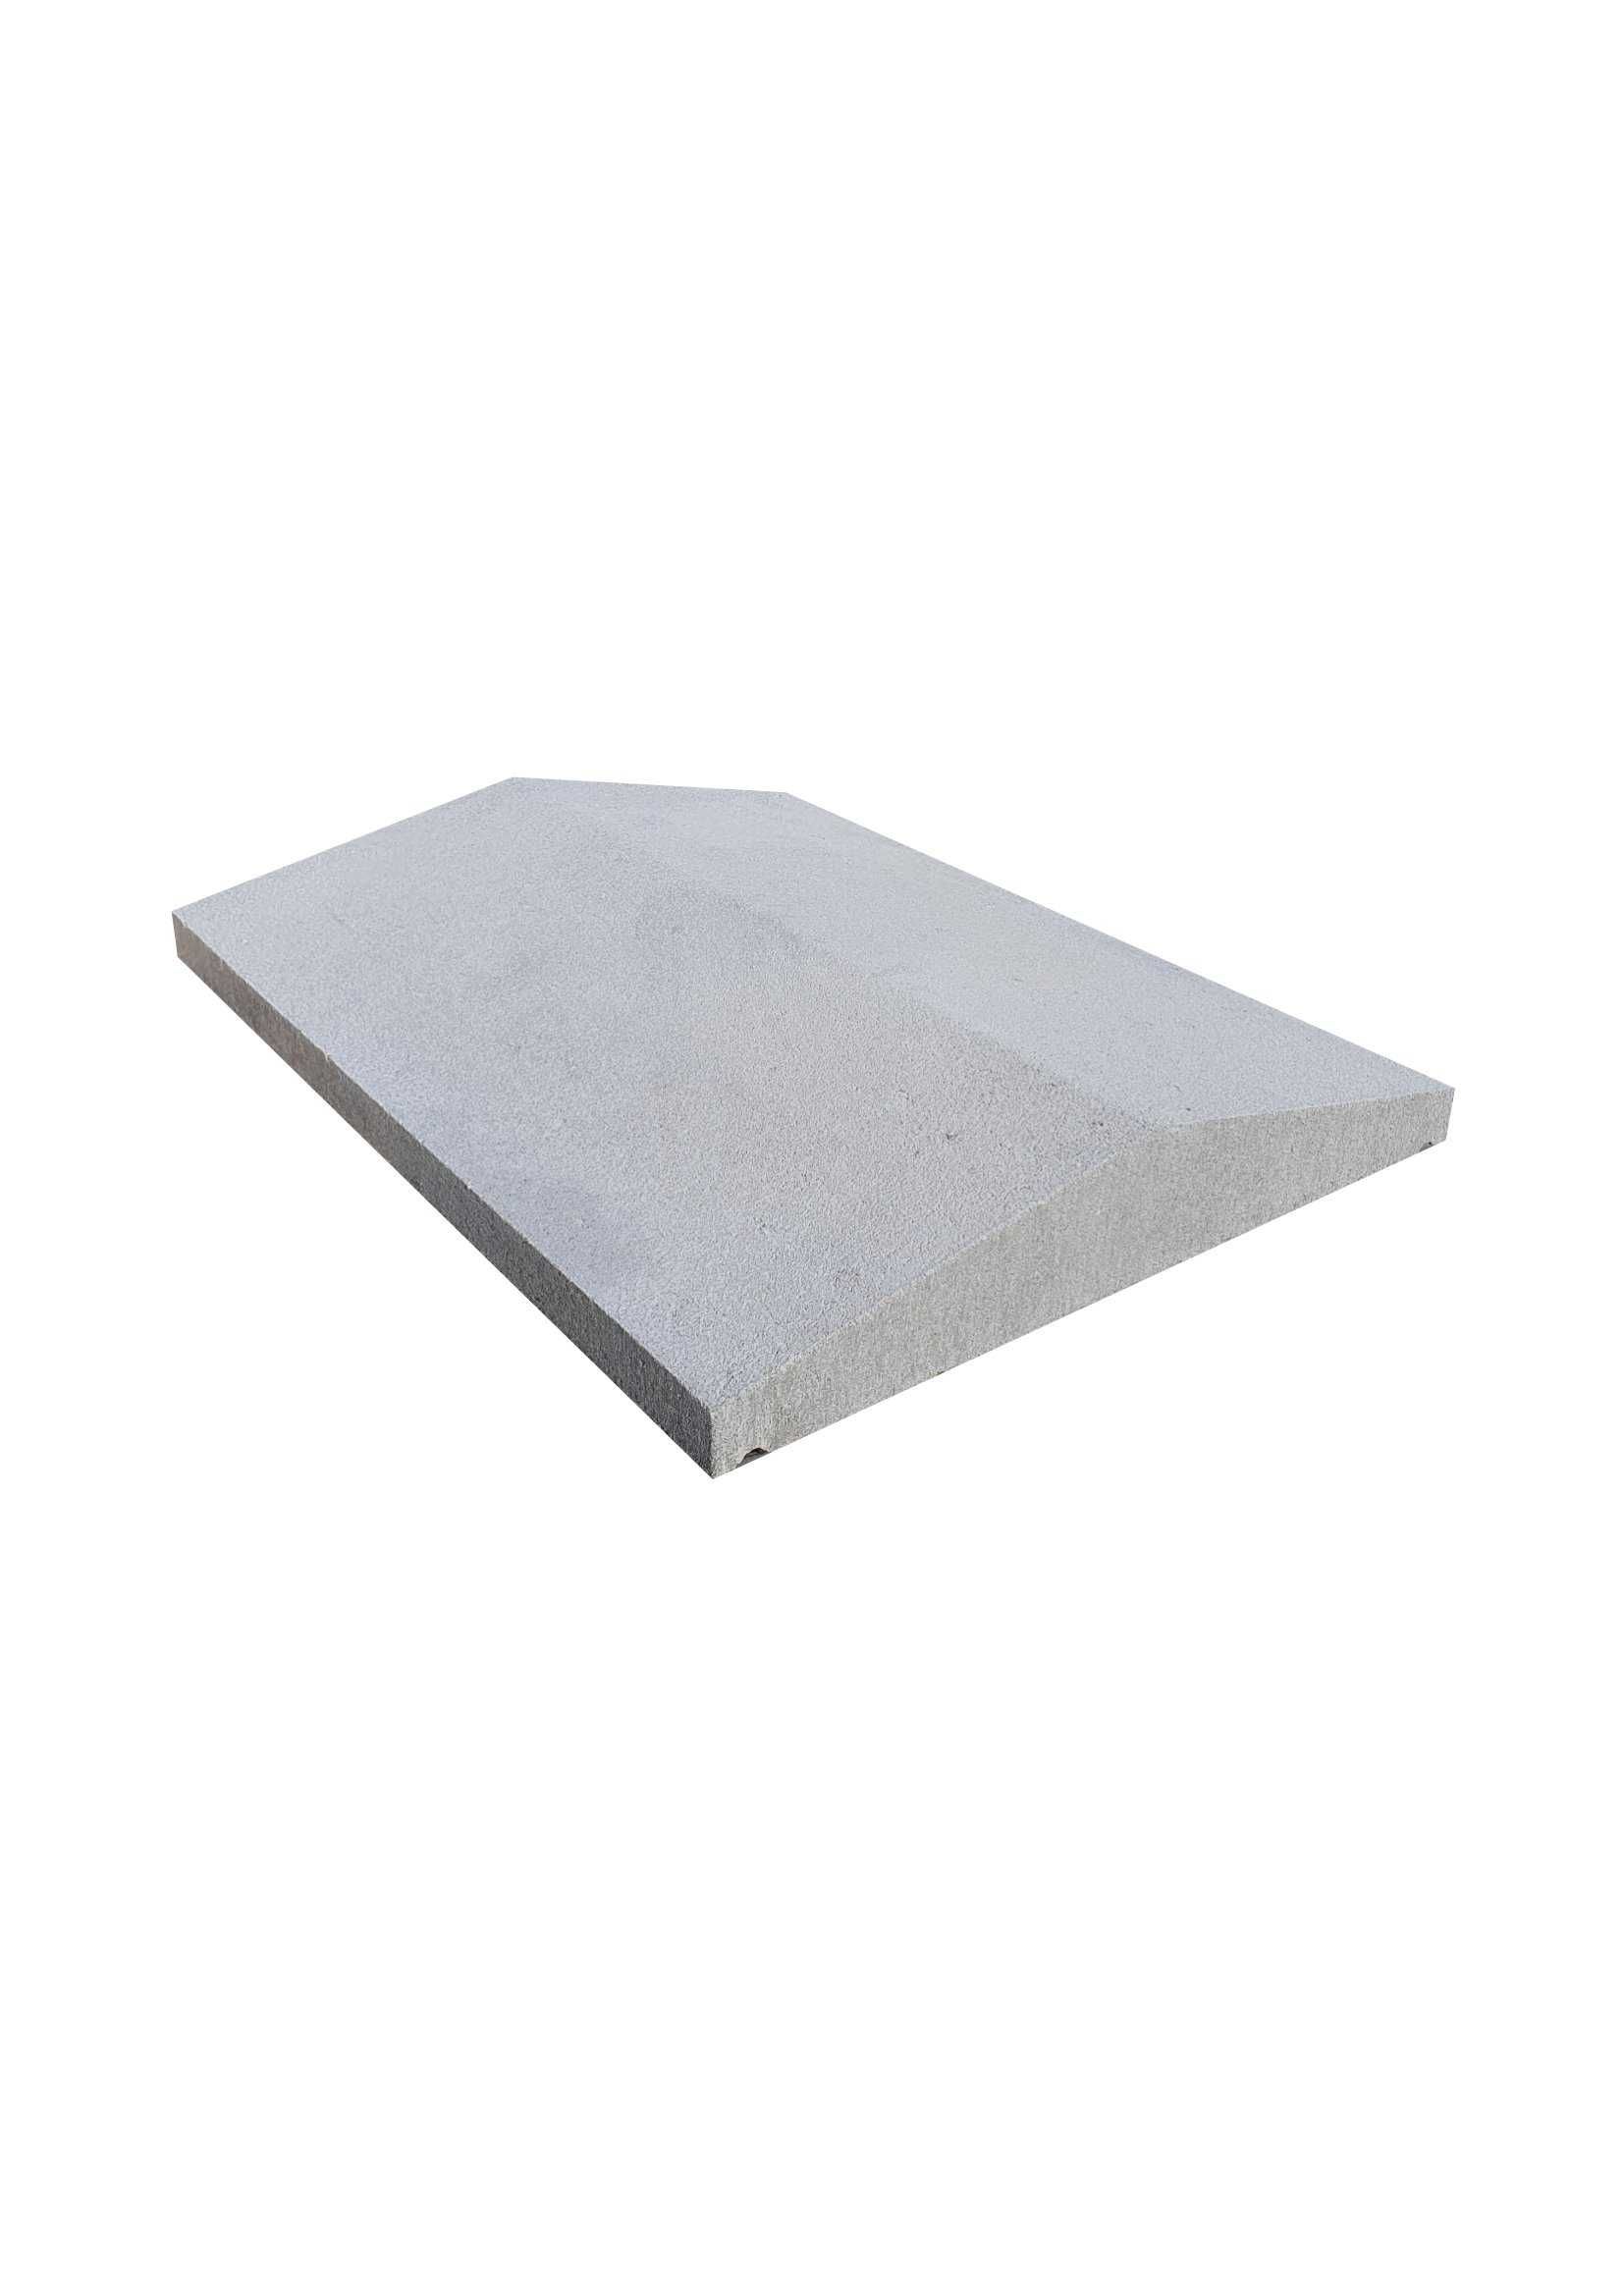 Daszki  betonowe 39x50 dwuspadowe jednospadowe płaskie  na murki mury